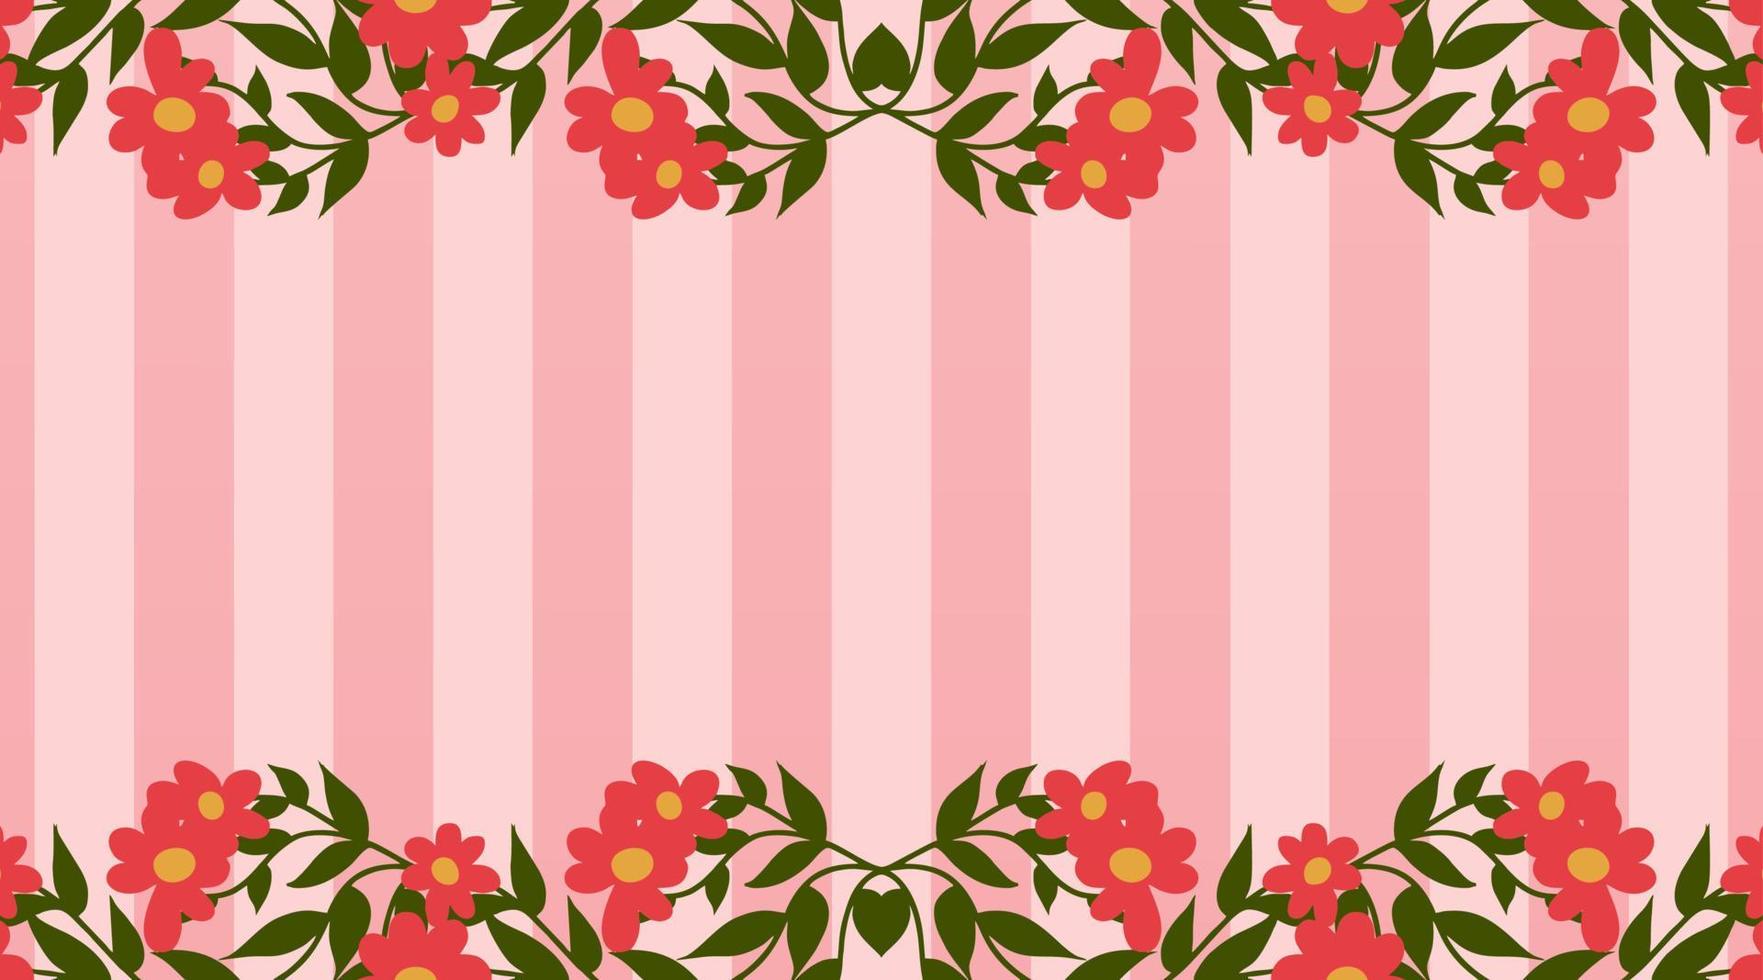 rosa Hintergrund, mit verzierter Vektorillustration von Blumen vektor